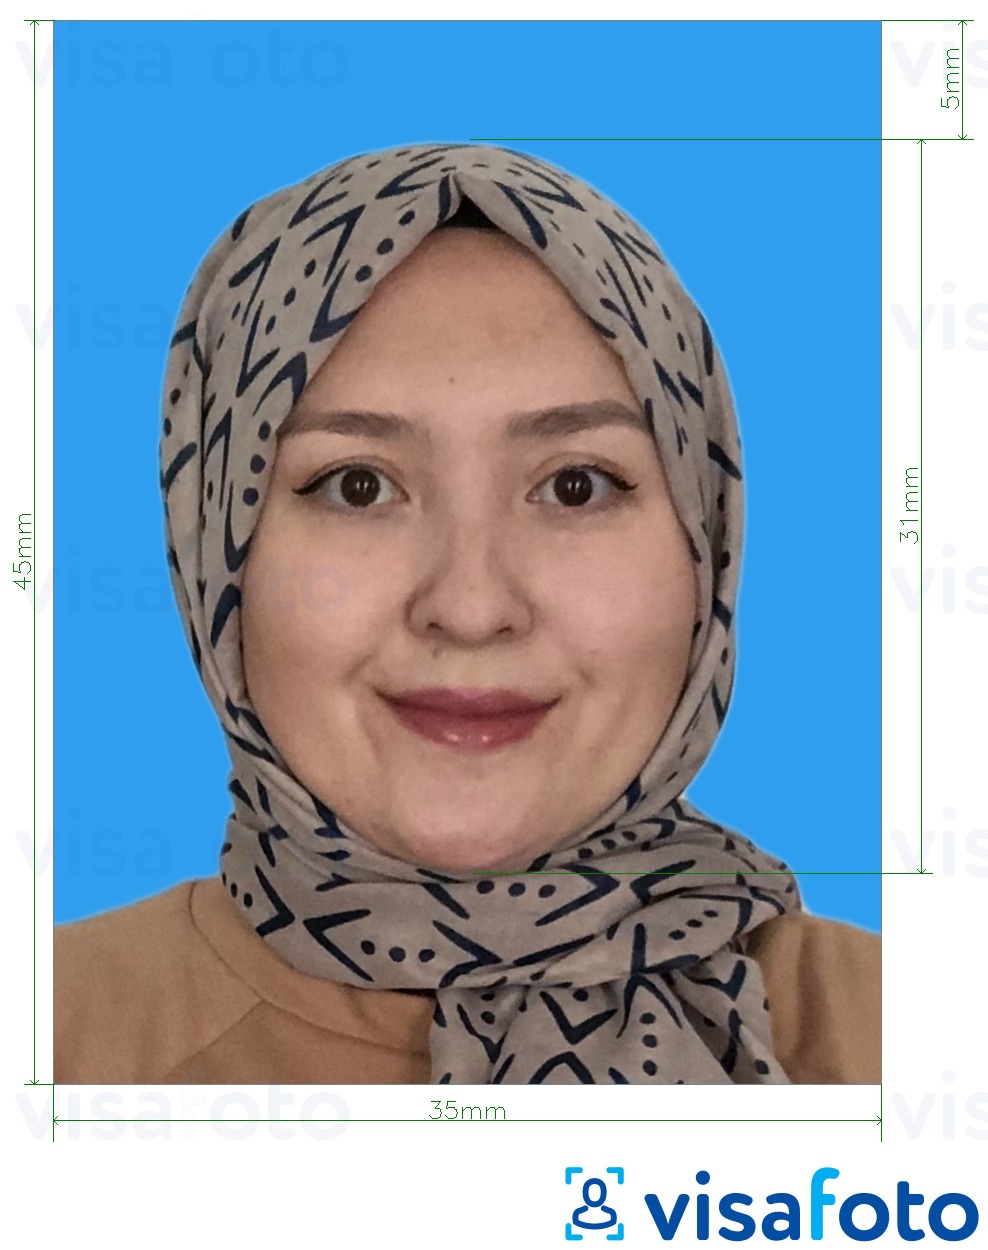 Fotobeispiel für Malaysia Visa 35x45 mm blauer Hintergrund mit genauer größenangabe